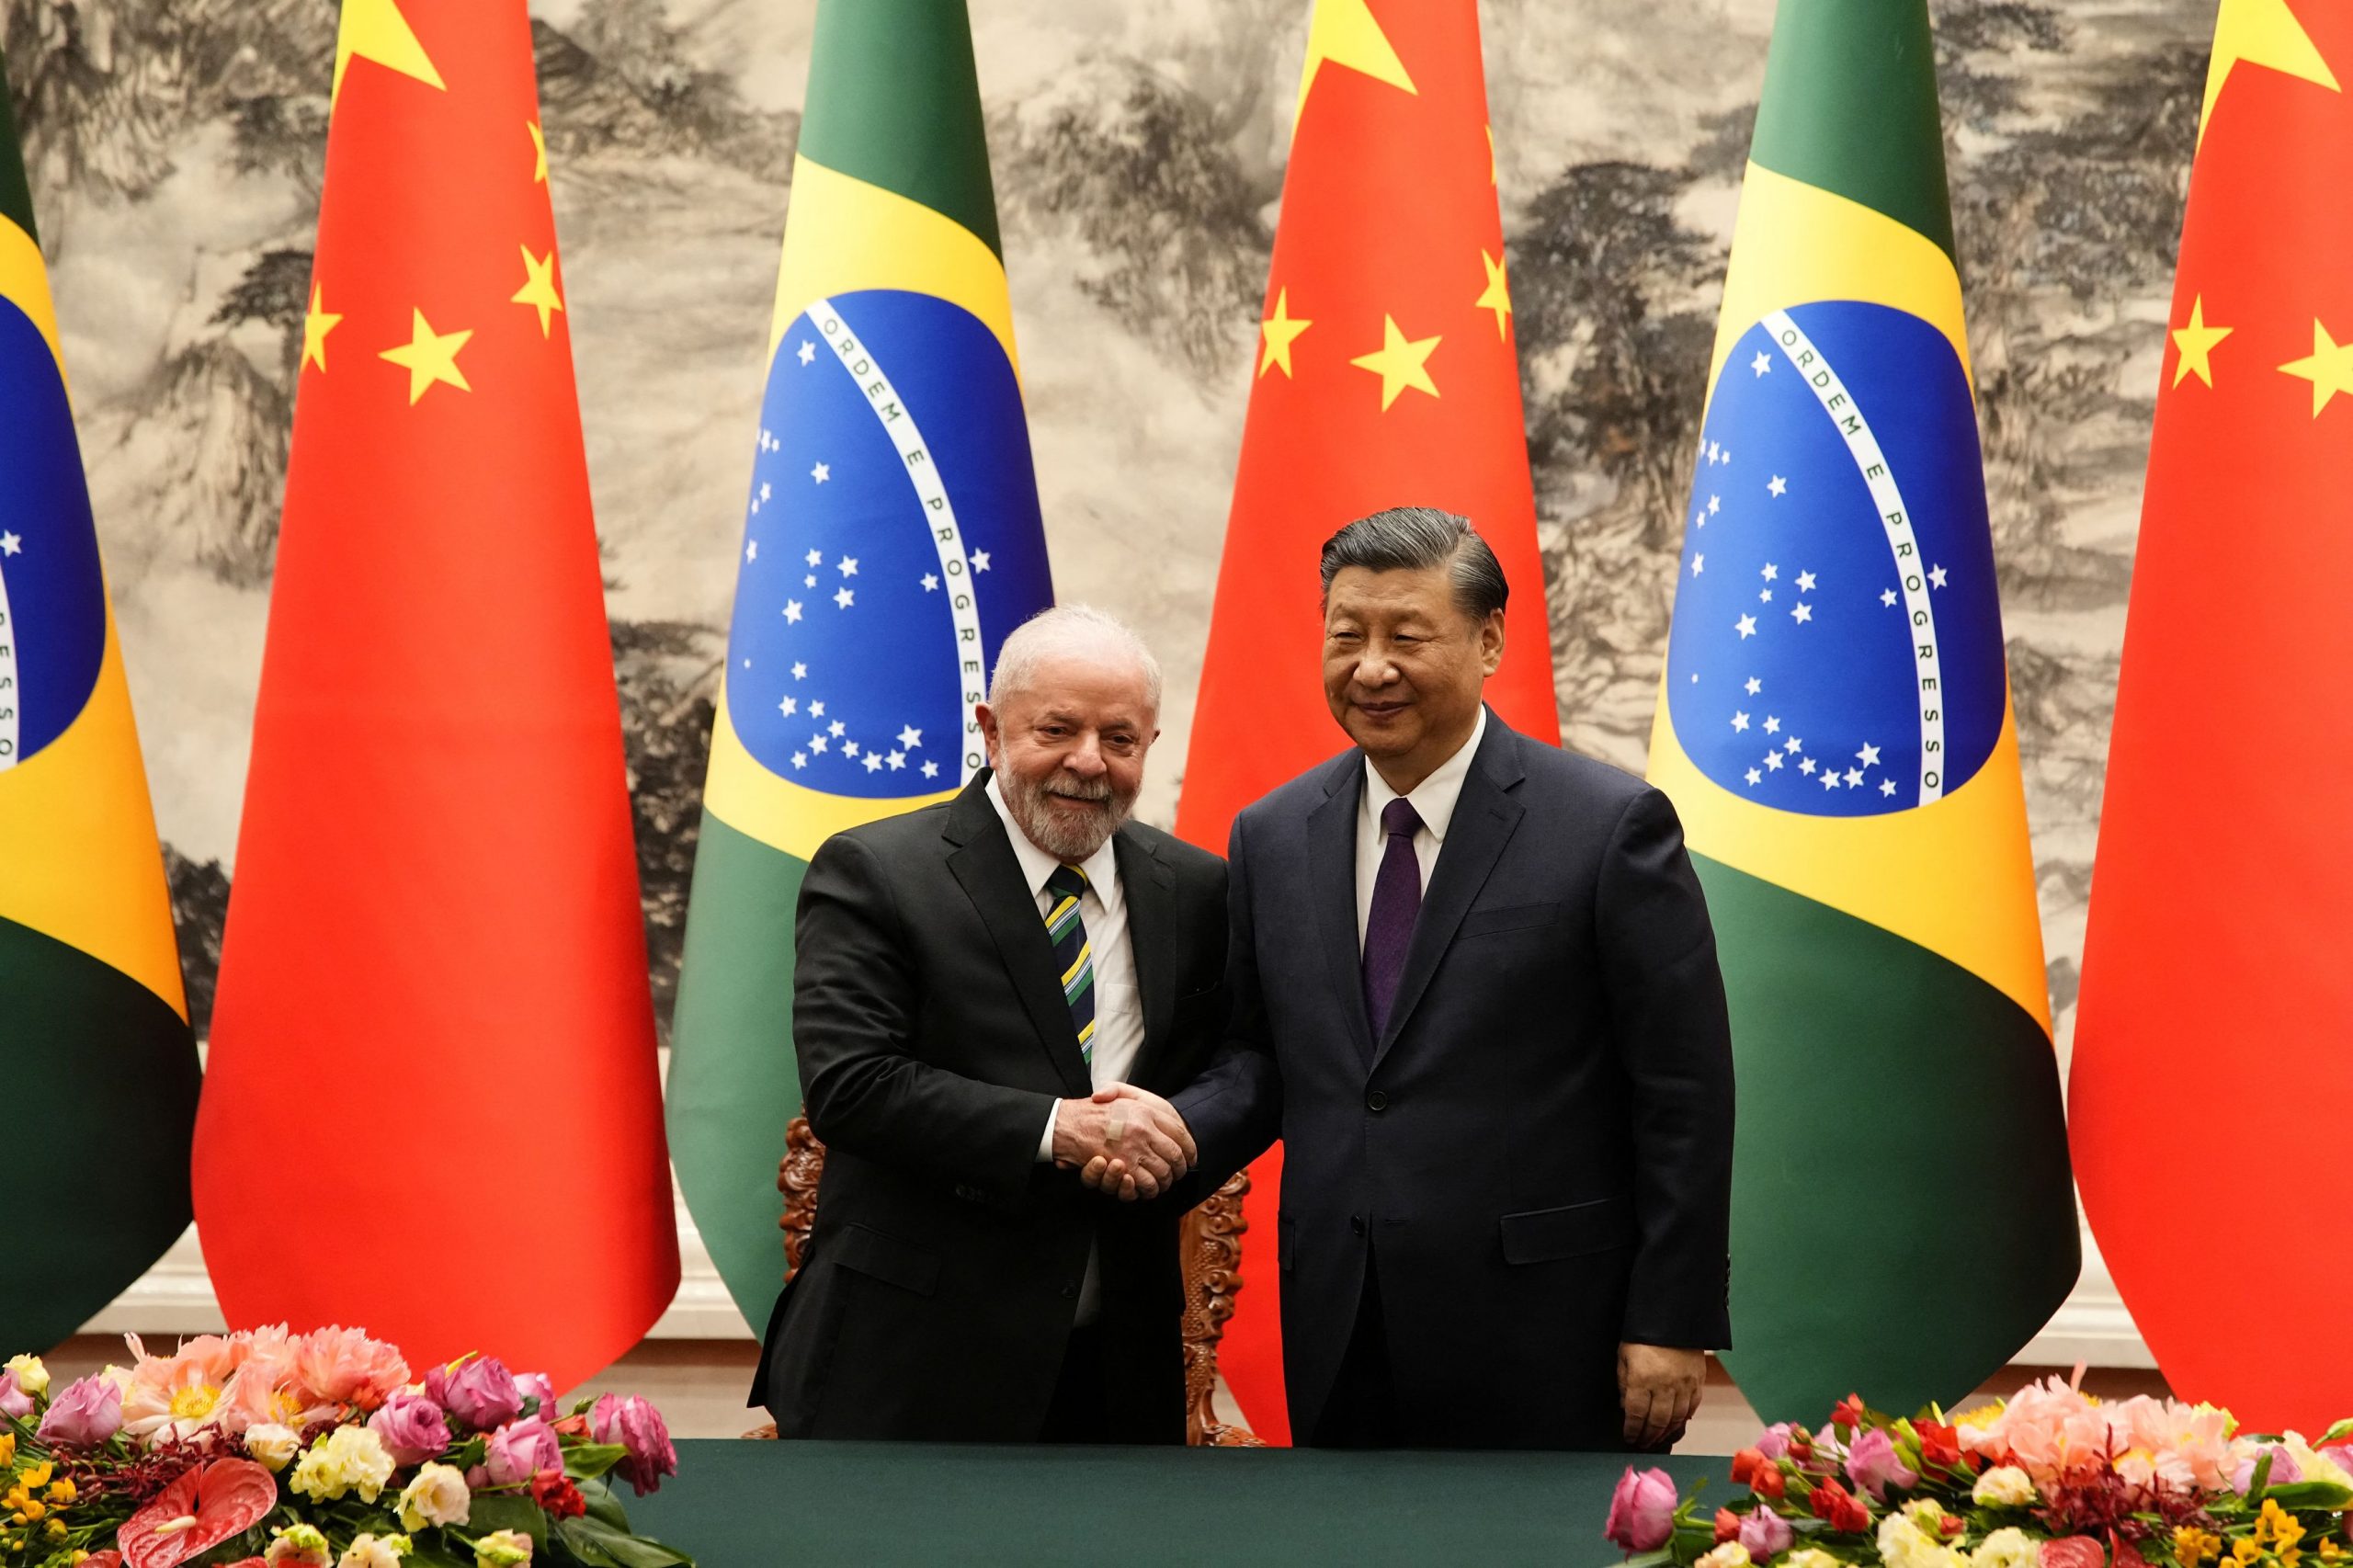 Βραζιλία: Συμφωνία για συνεργασία με την Κίνα στην παραγωγή ημιαγωγών